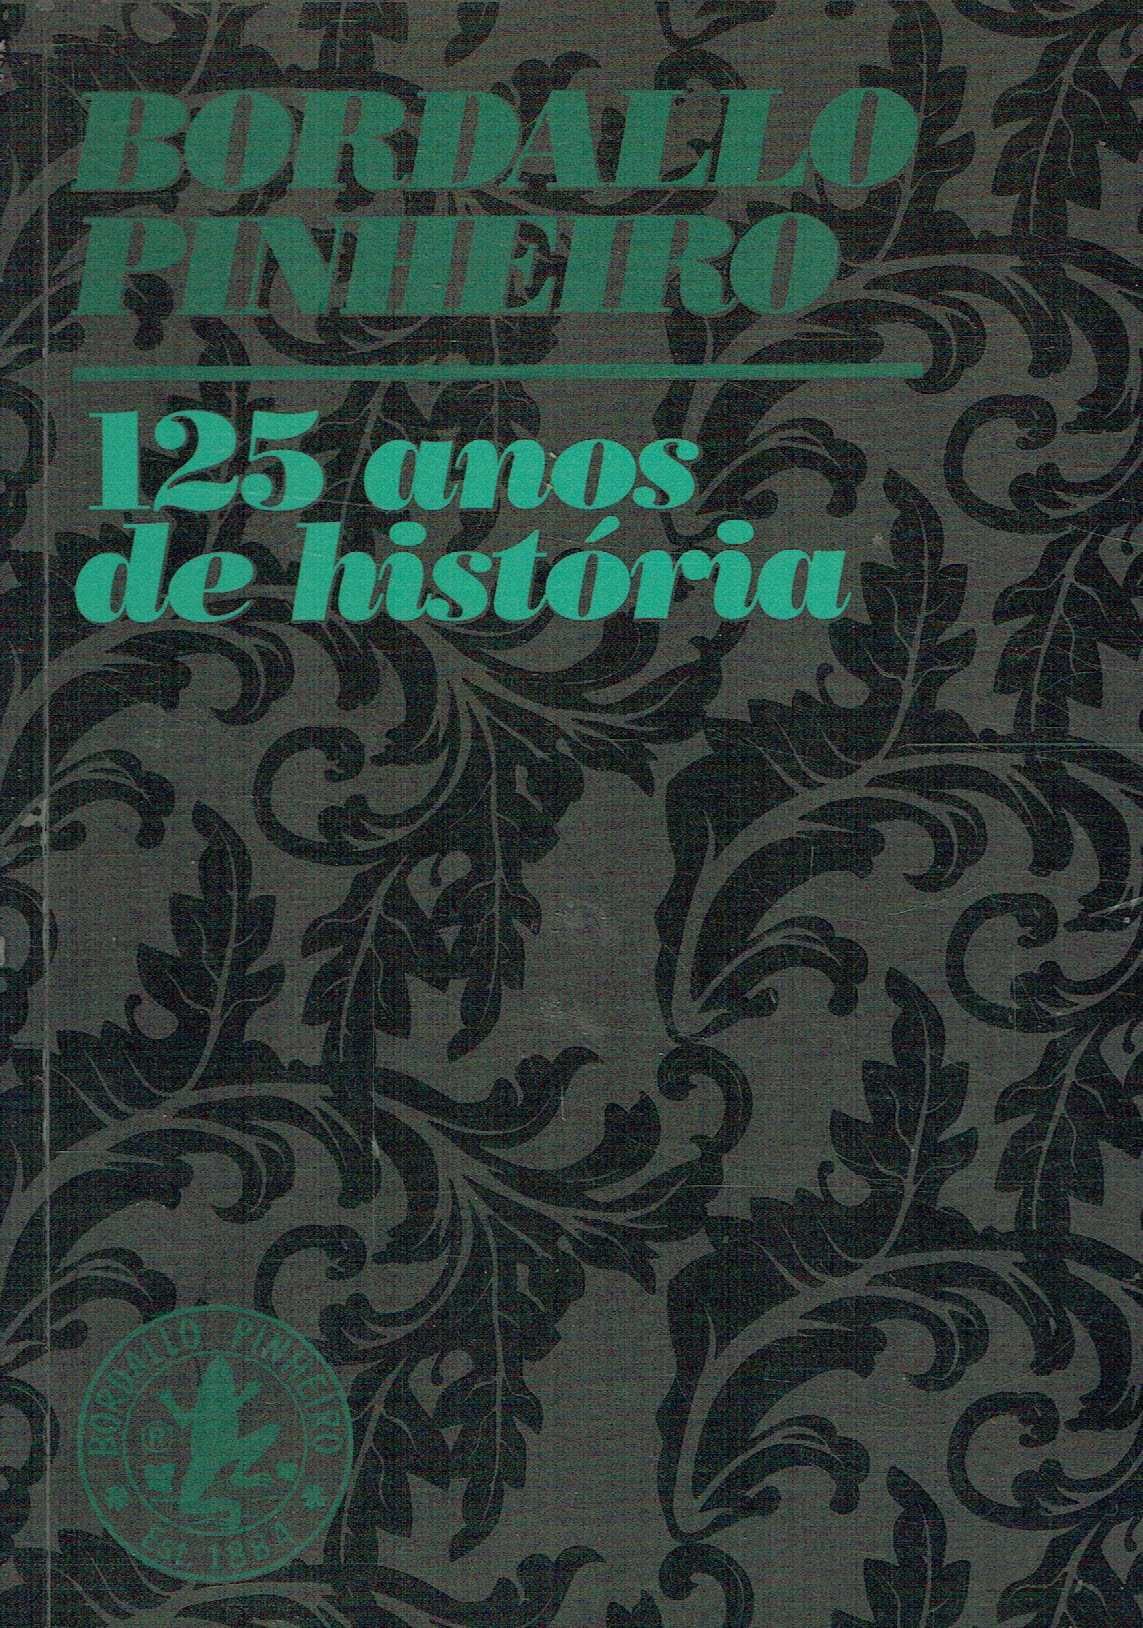 7436

Bordalo Pinheiro - 125 anos de História